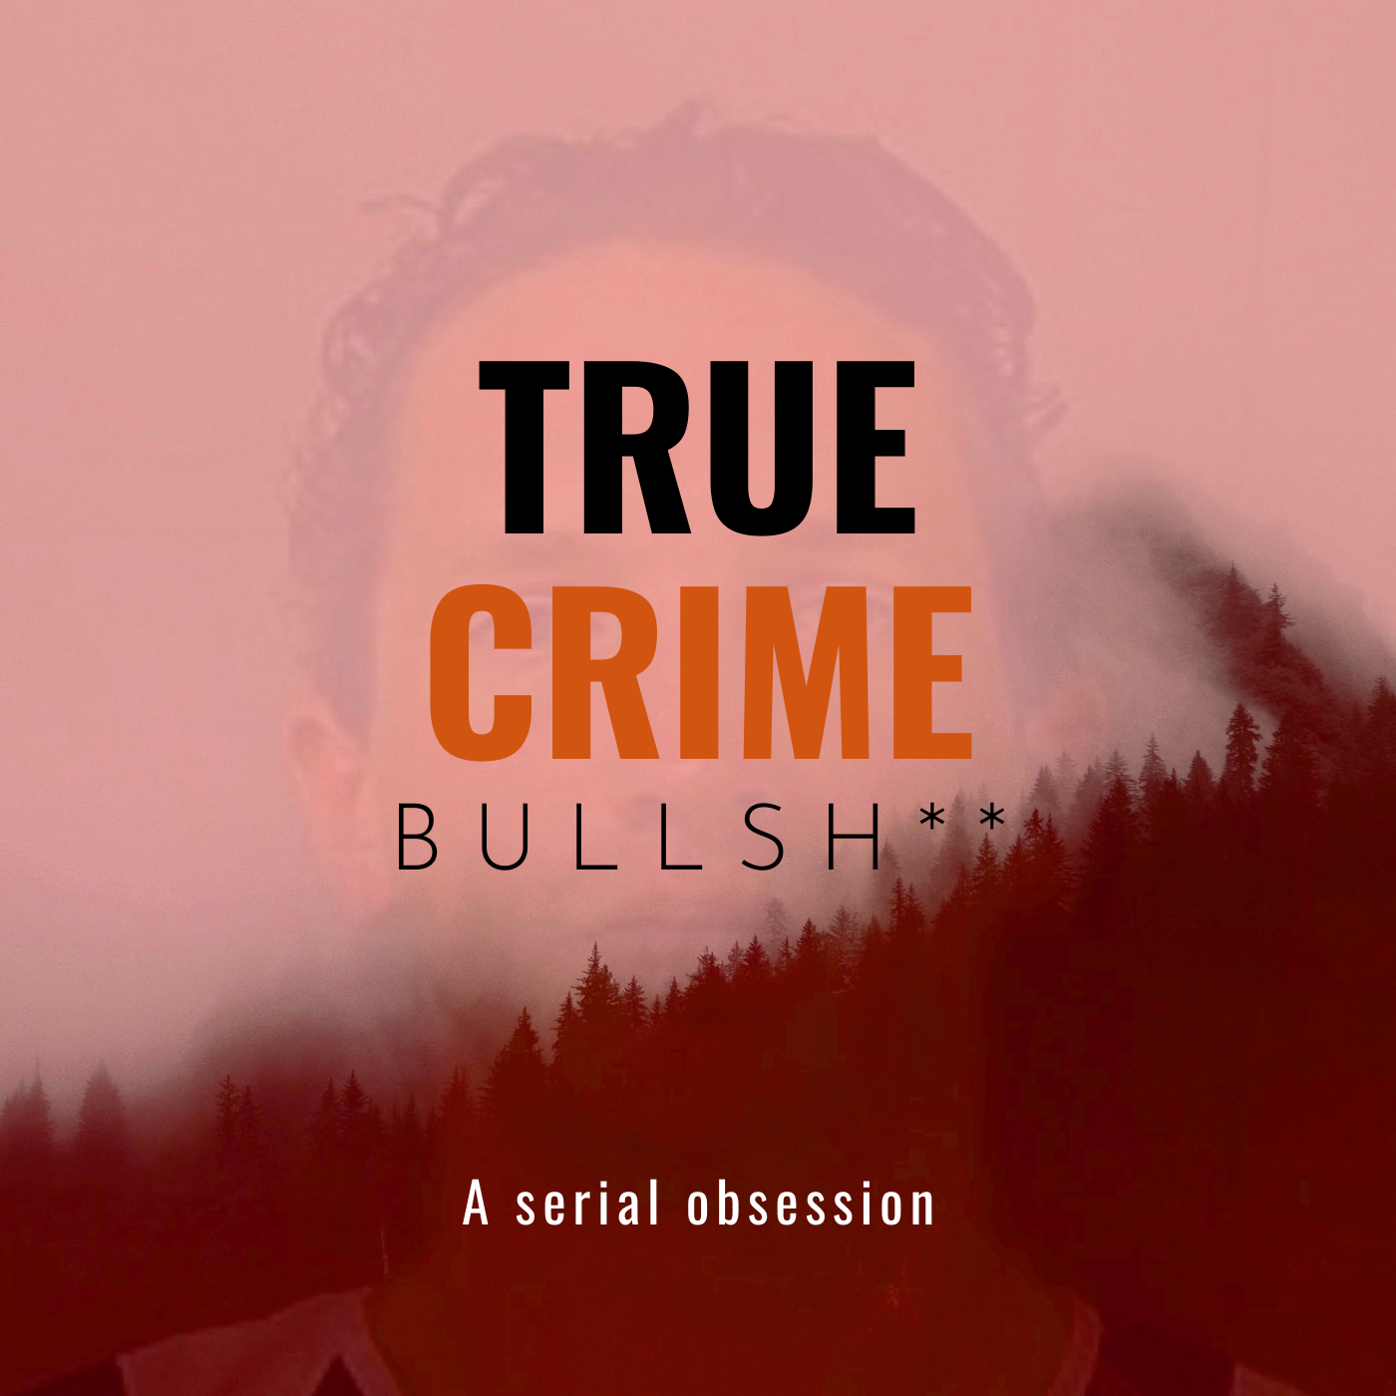 The cover for the podcast True Crime Bullsh**